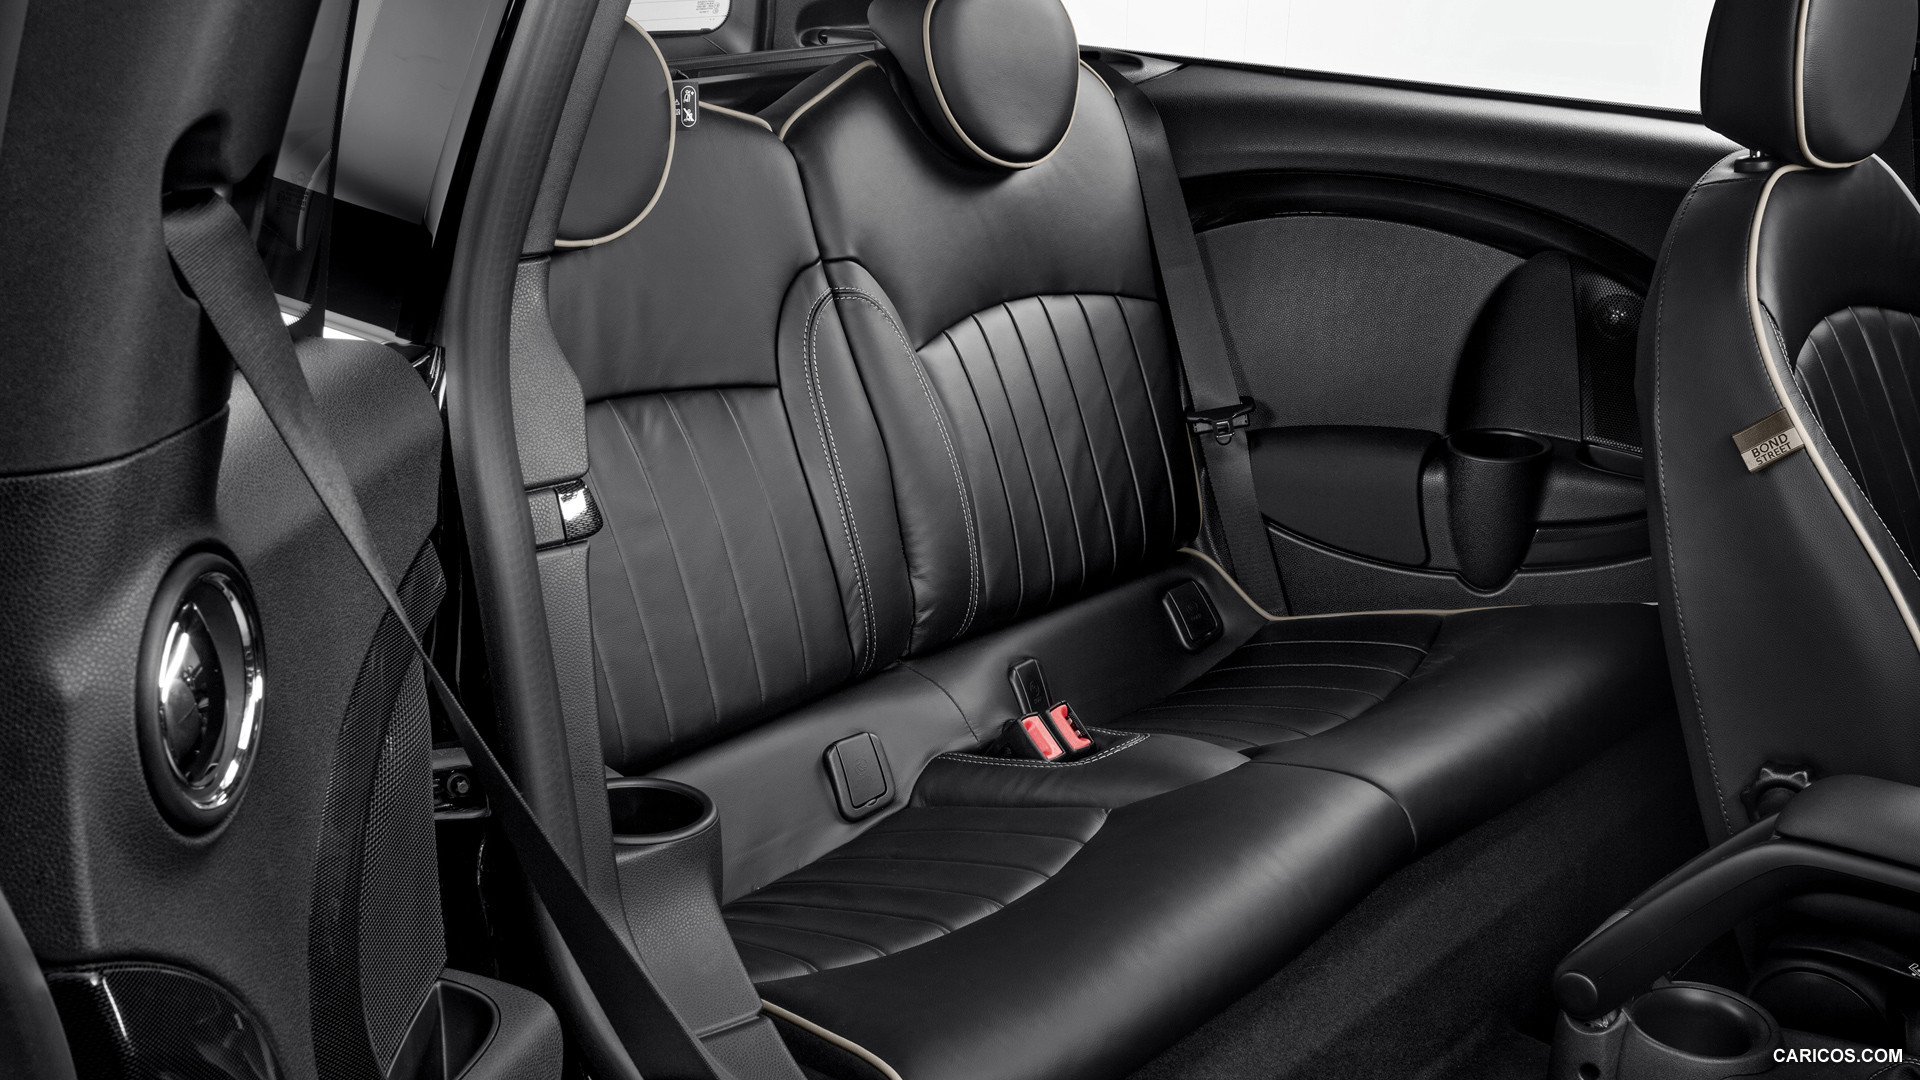 2013 MINI Clubman Bond Street  - Interior Rear Seats, #17 of 21